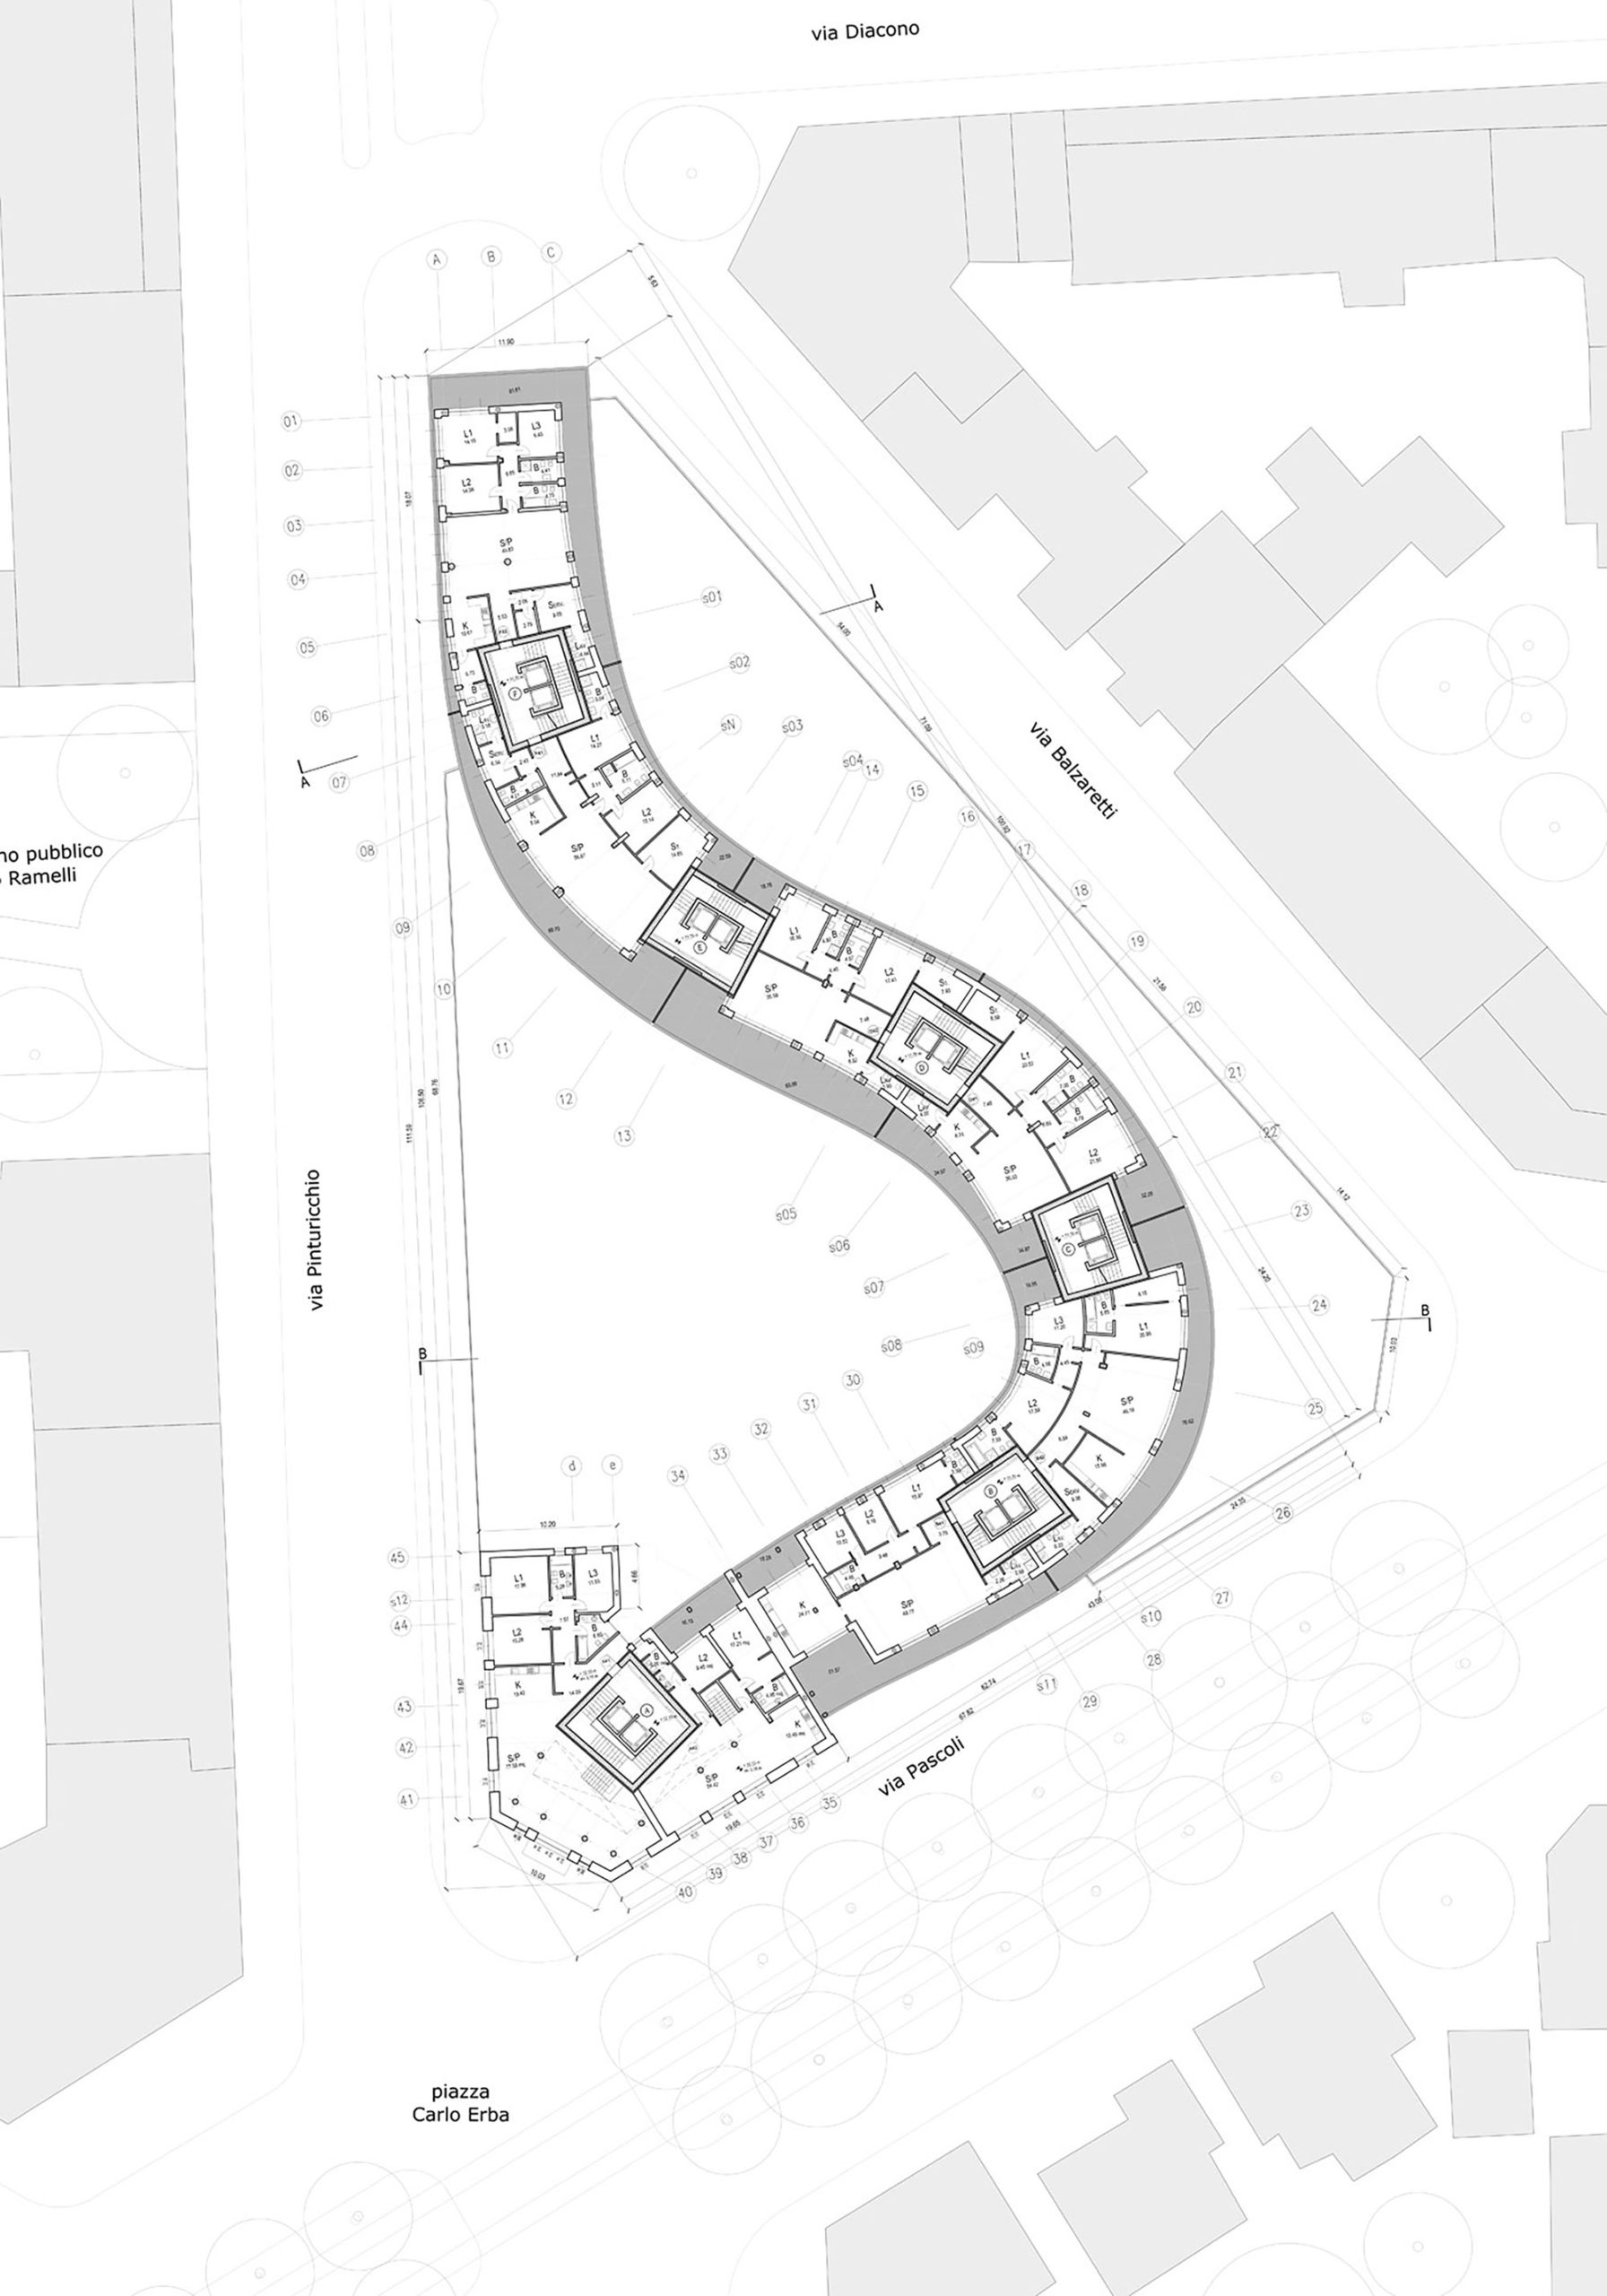 NOBILE Floor Plan - Residenze Calo Erba in Milan / Eisenman Architects + Degli Esposti Architetti + AZstudio